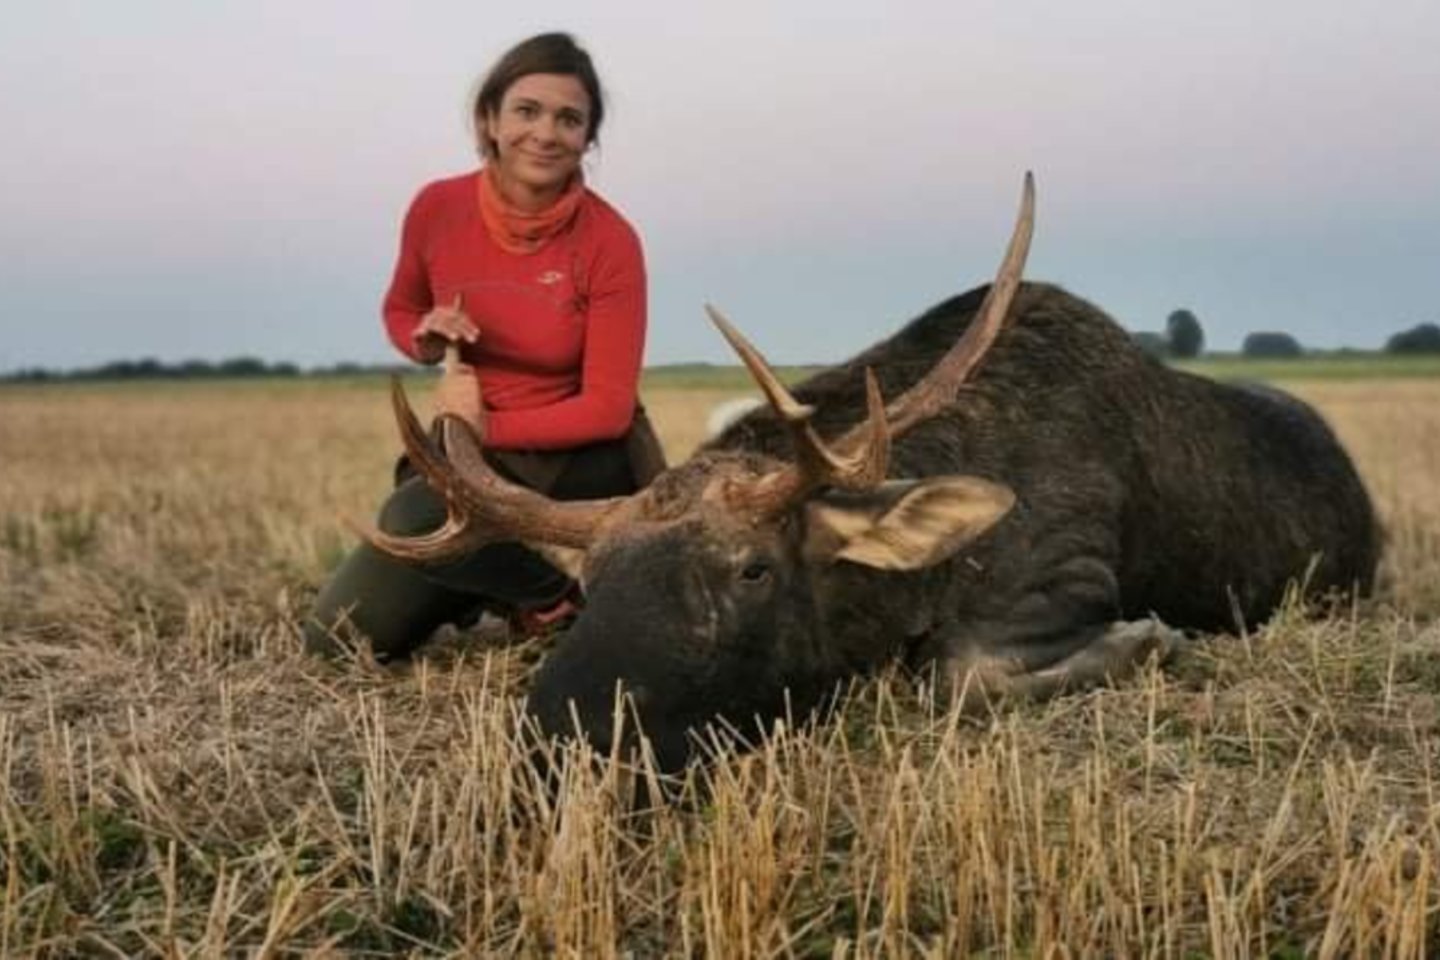  Lina senokai paneigė mitą, kad medžioklė ir moteriškumas nesuderinama. <br>Nuotr. iš asmeninio albumo